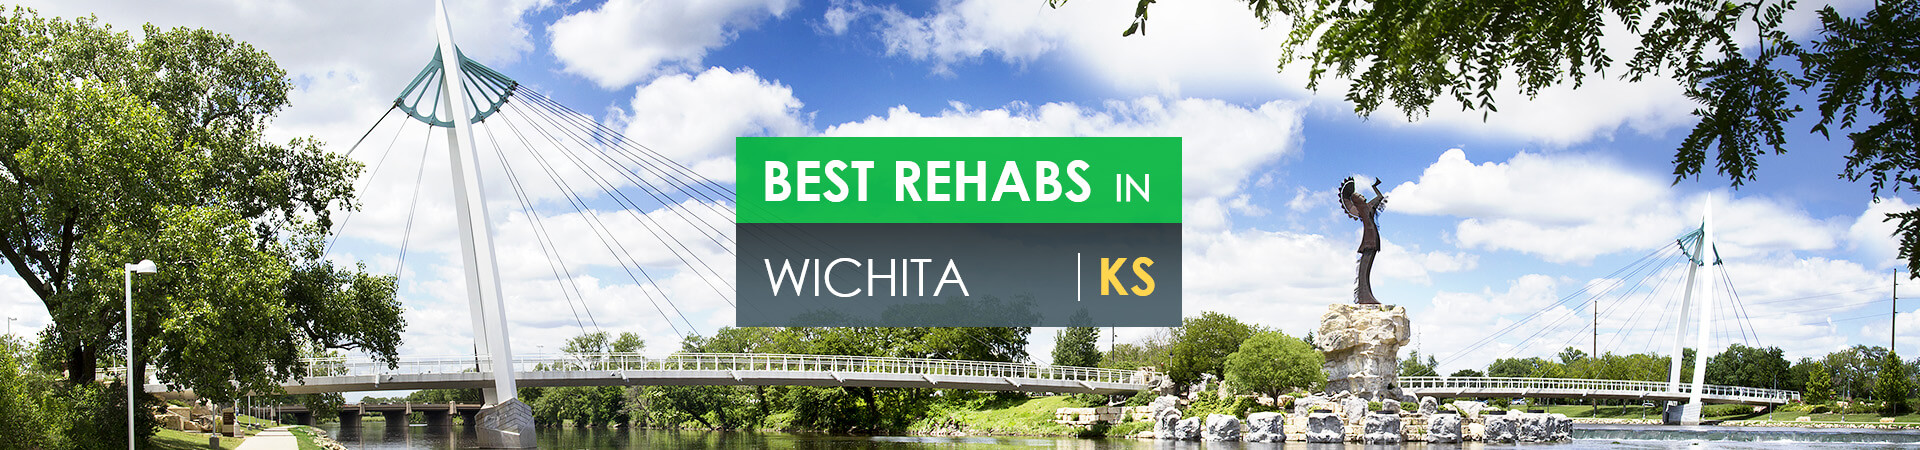 Best rehabs in Wichita, KS